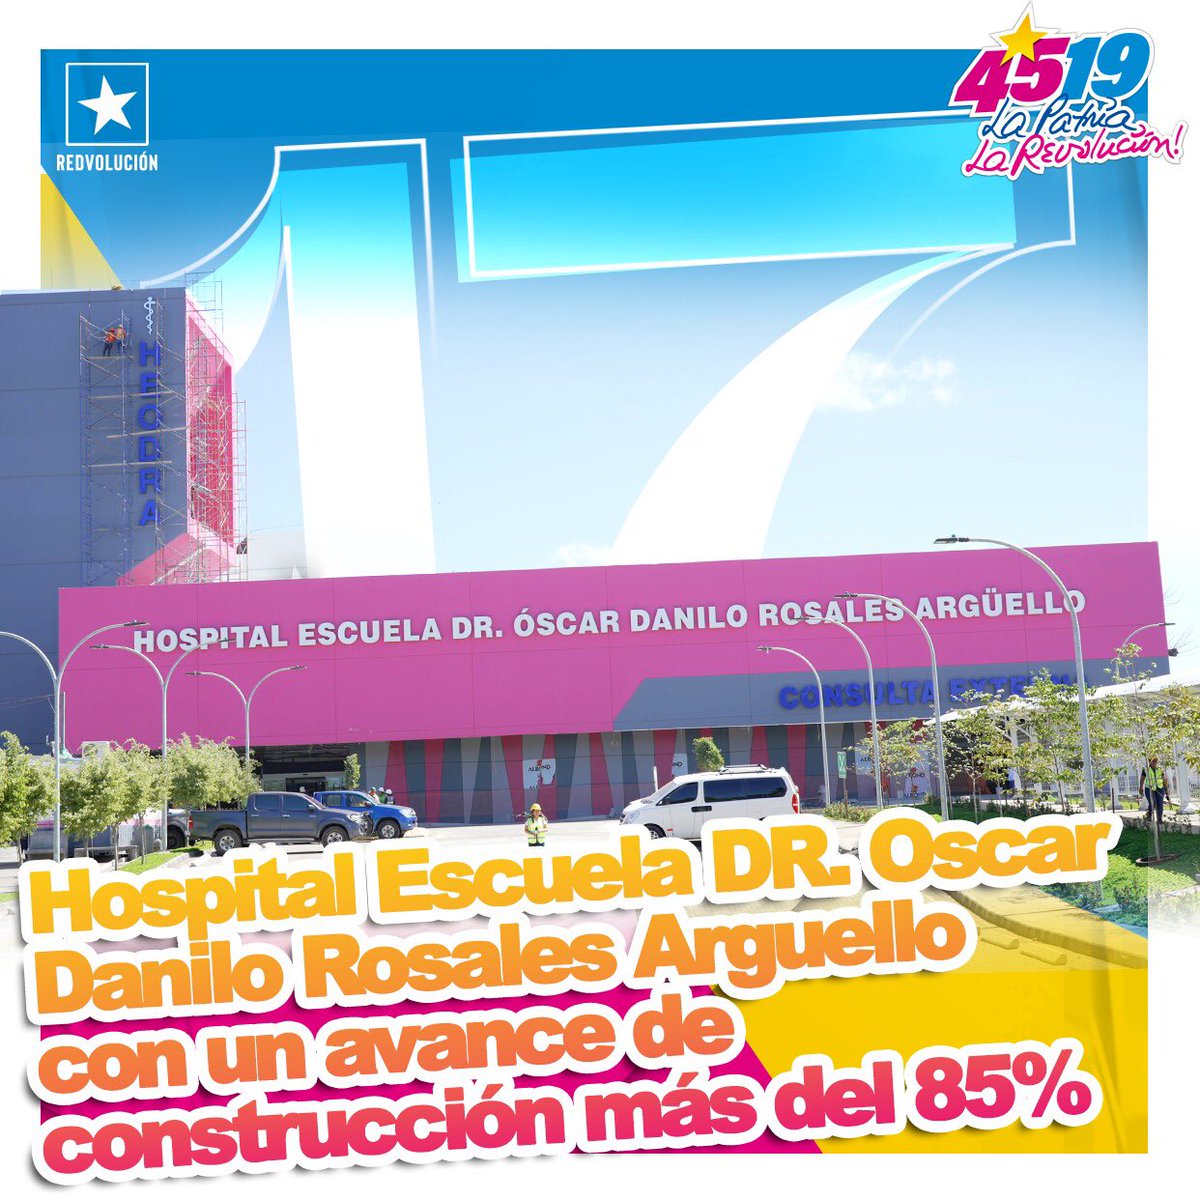 ✨Seguimos construyendo con amor hacía nuevas victorias, gracias a nuestro buen gobierno. ❤️🖤 Actualmente se realiza la construcción del nuevo Hospital Escuela Oscar Danilo Rosales Argüello, en León, que permitirá atender a más de 424,944 habitantes #4519LaPatriaLaRevolución